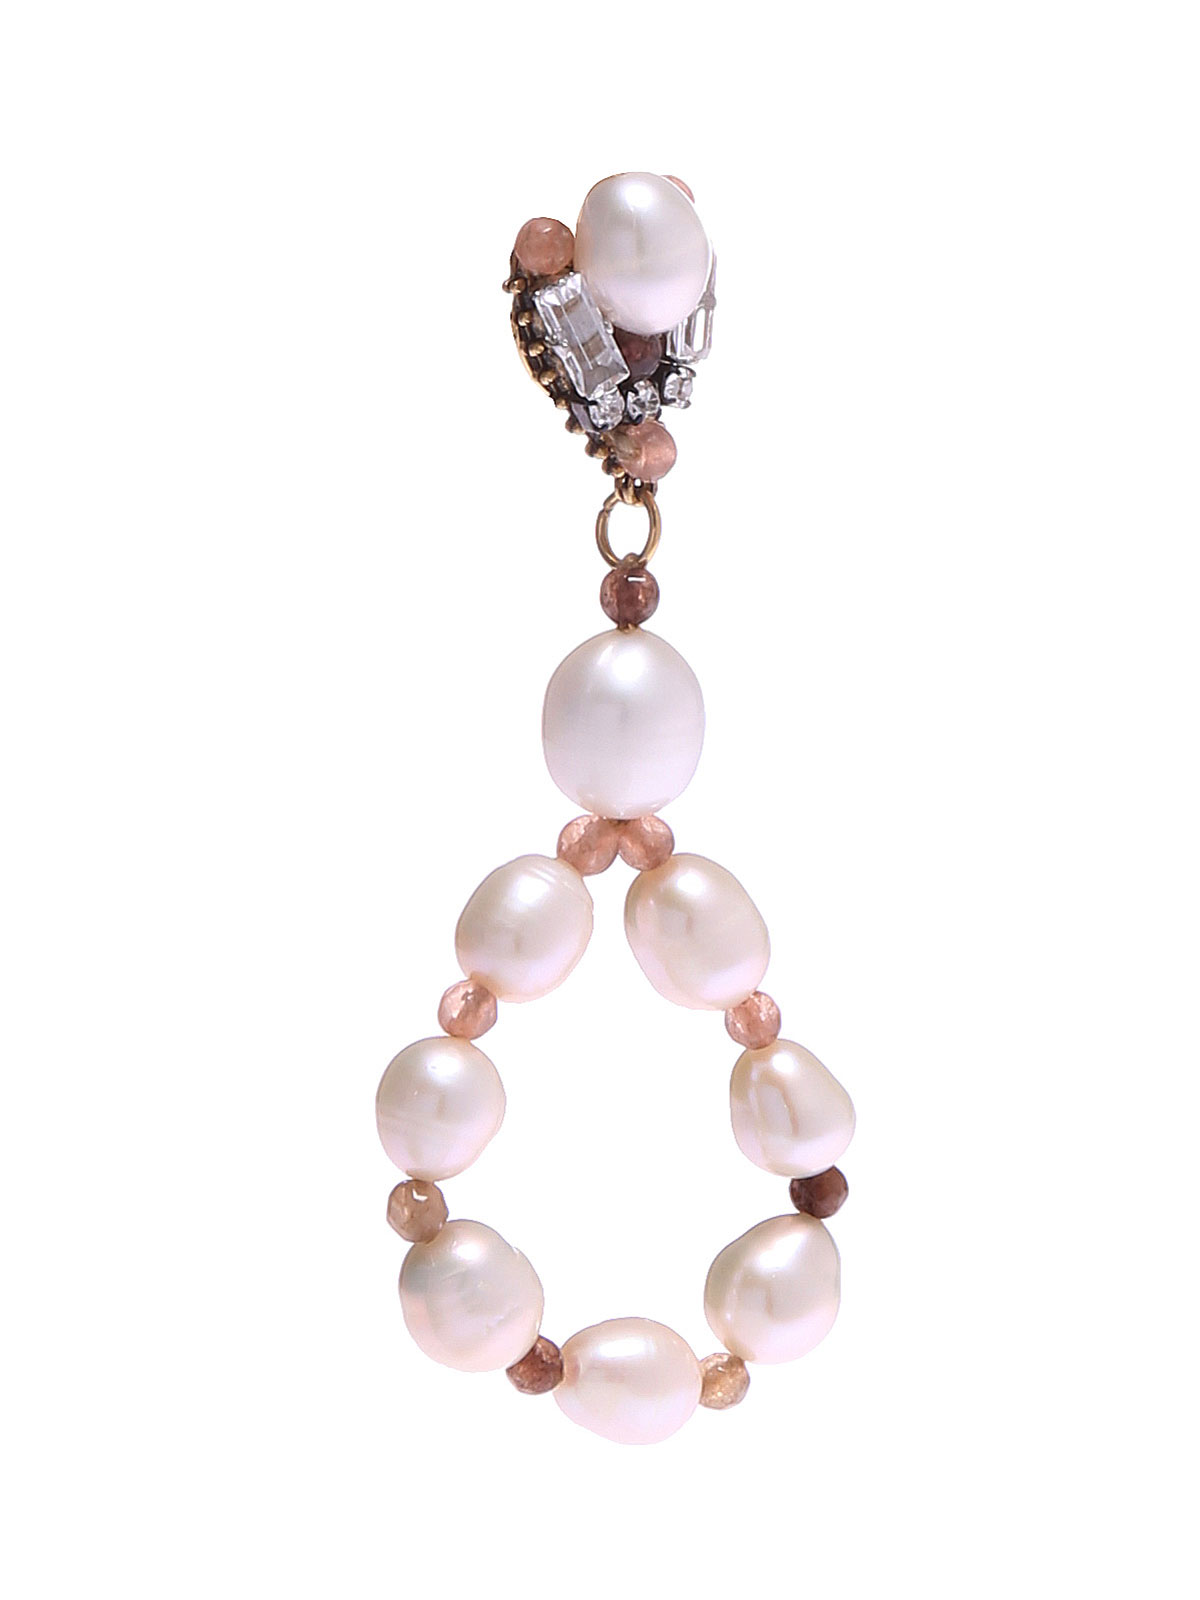 Jade earrings with freashwater pearls